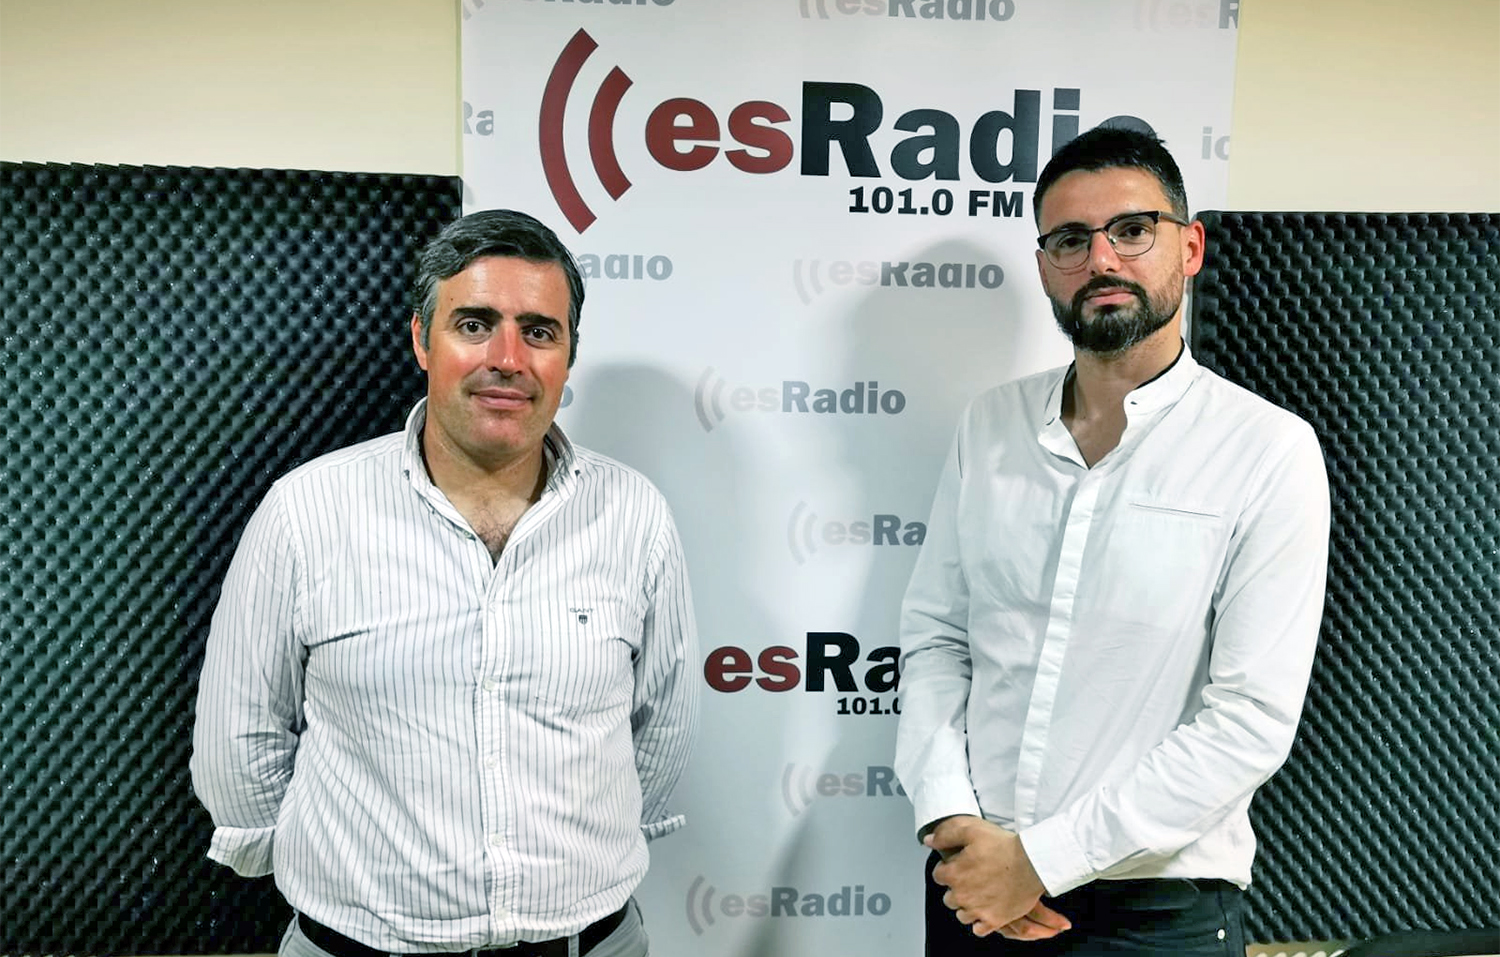 La cadena EsRadio abre nueva antena en la provincia de Jaén dirigida por el periodista Daniel Illana